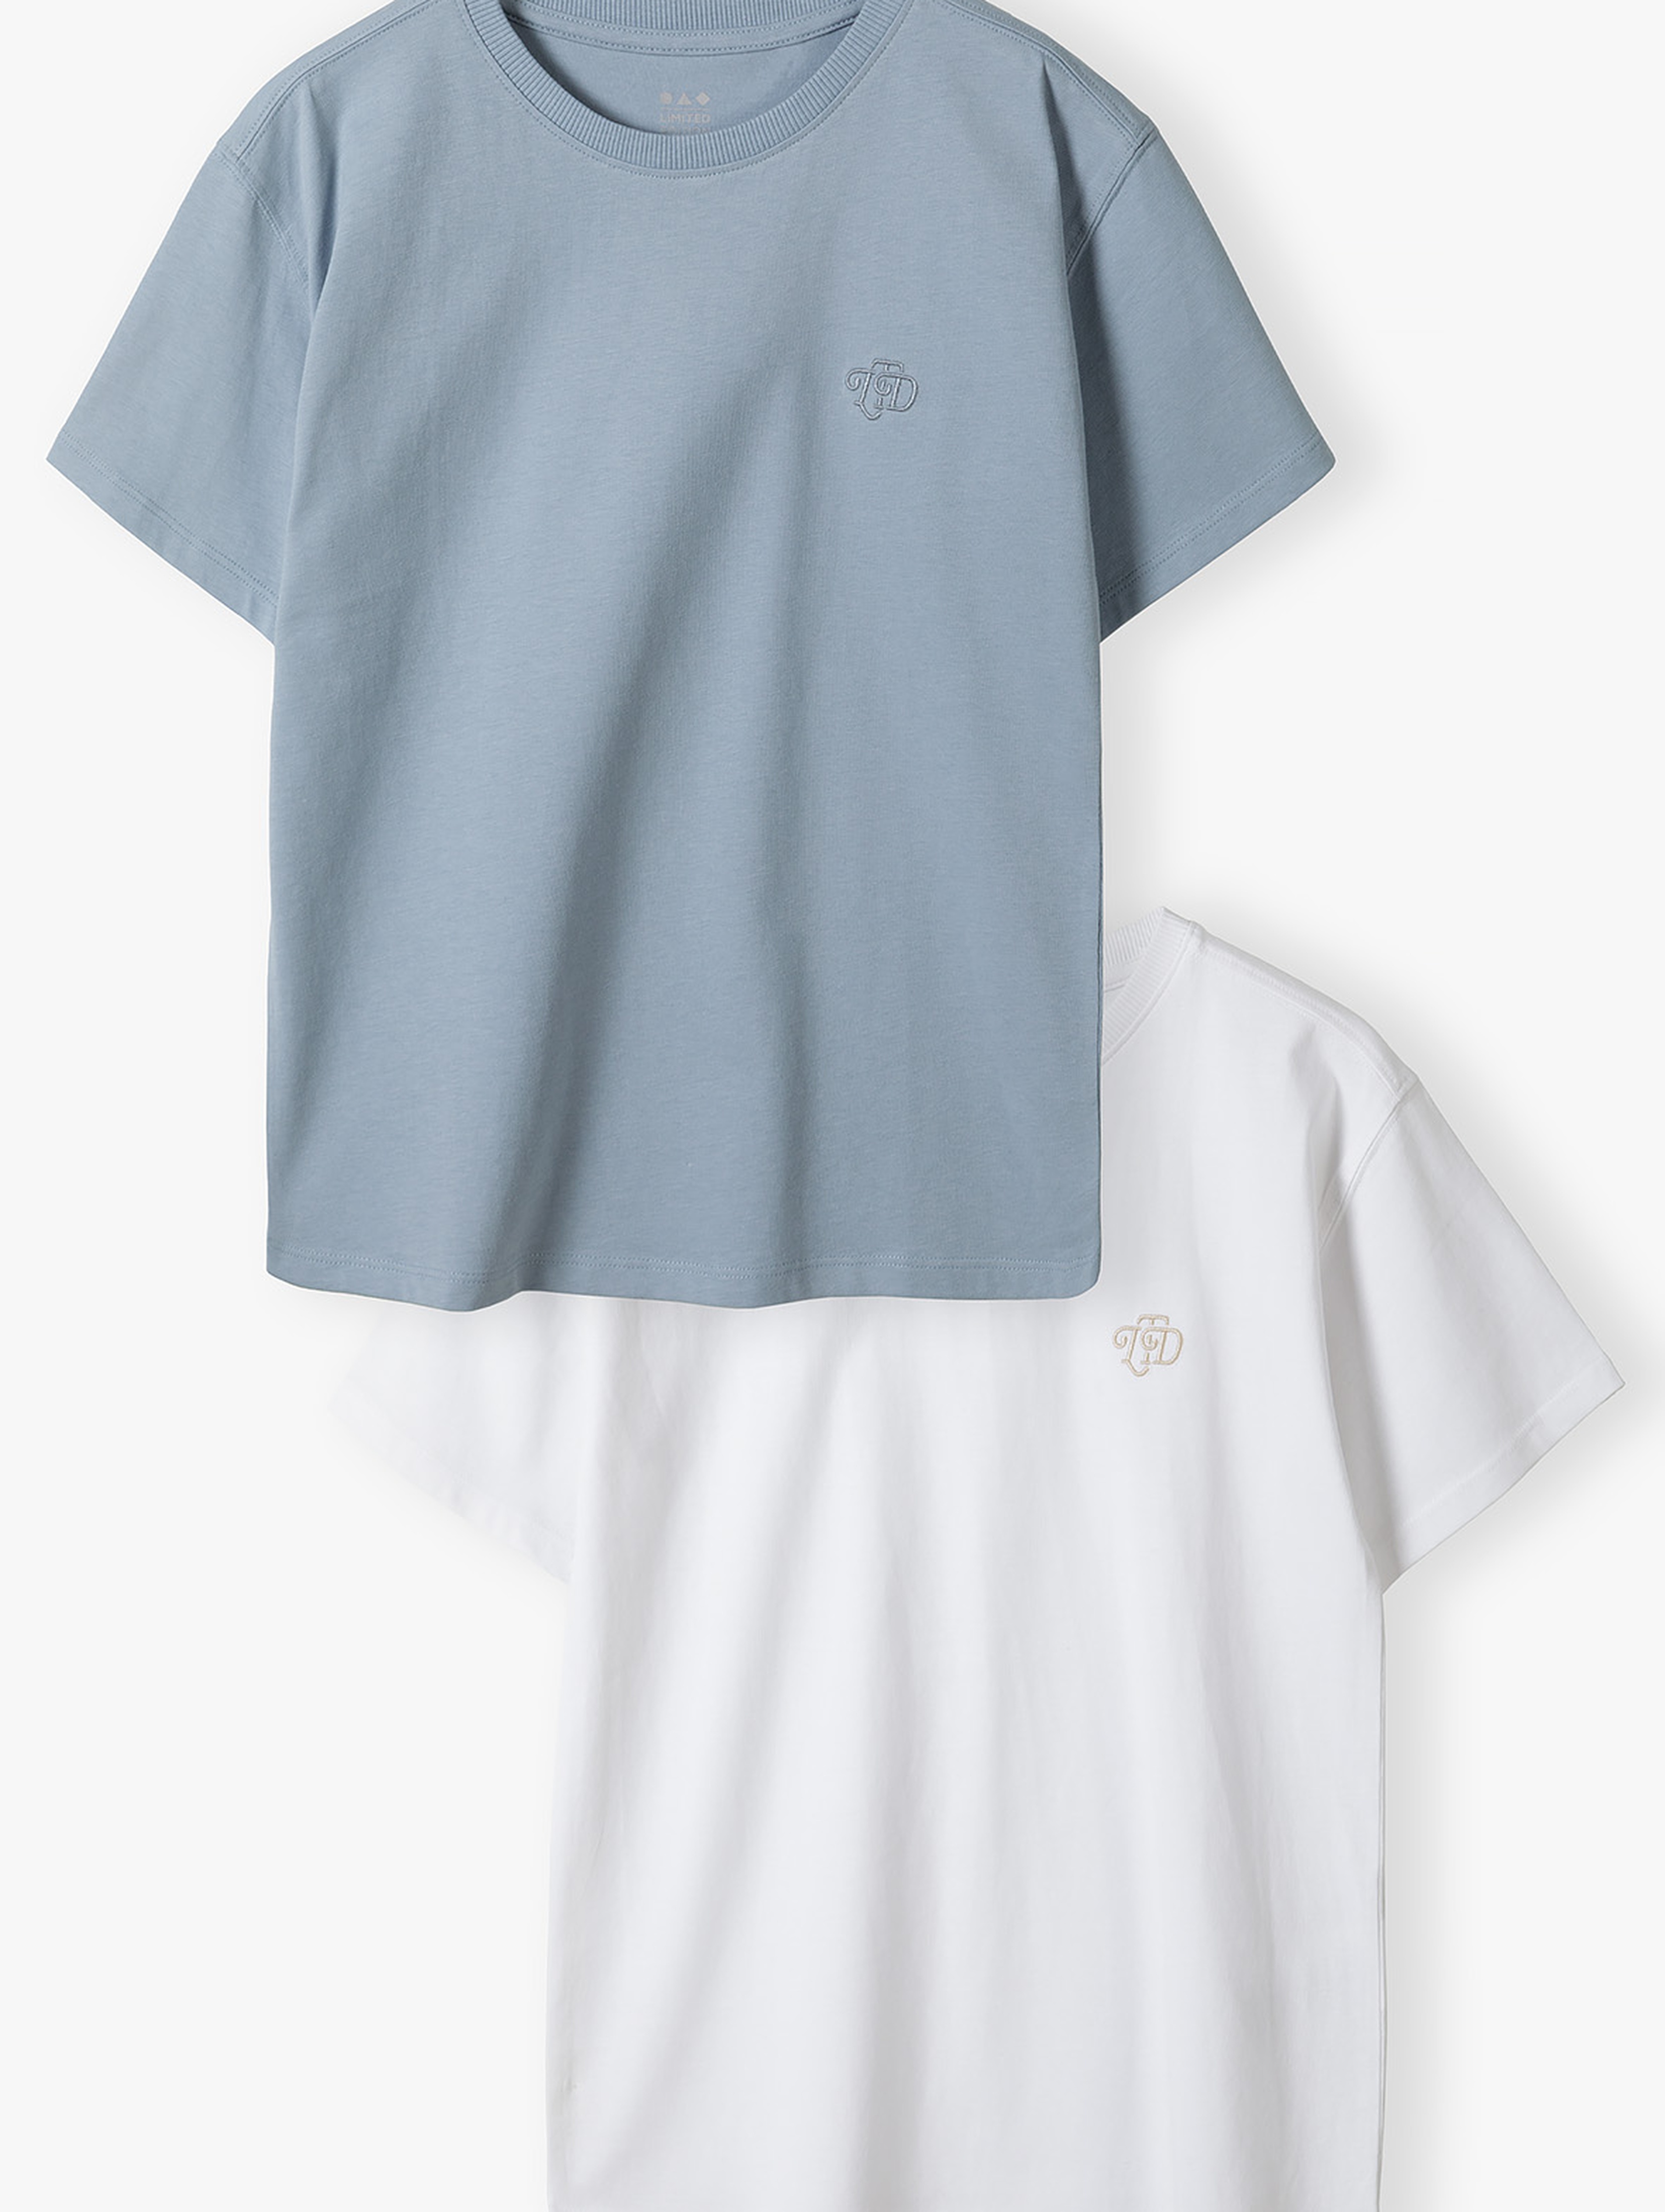 Bawełniane t-shirty dla chłopca - niebieski i biały - Limited Edition